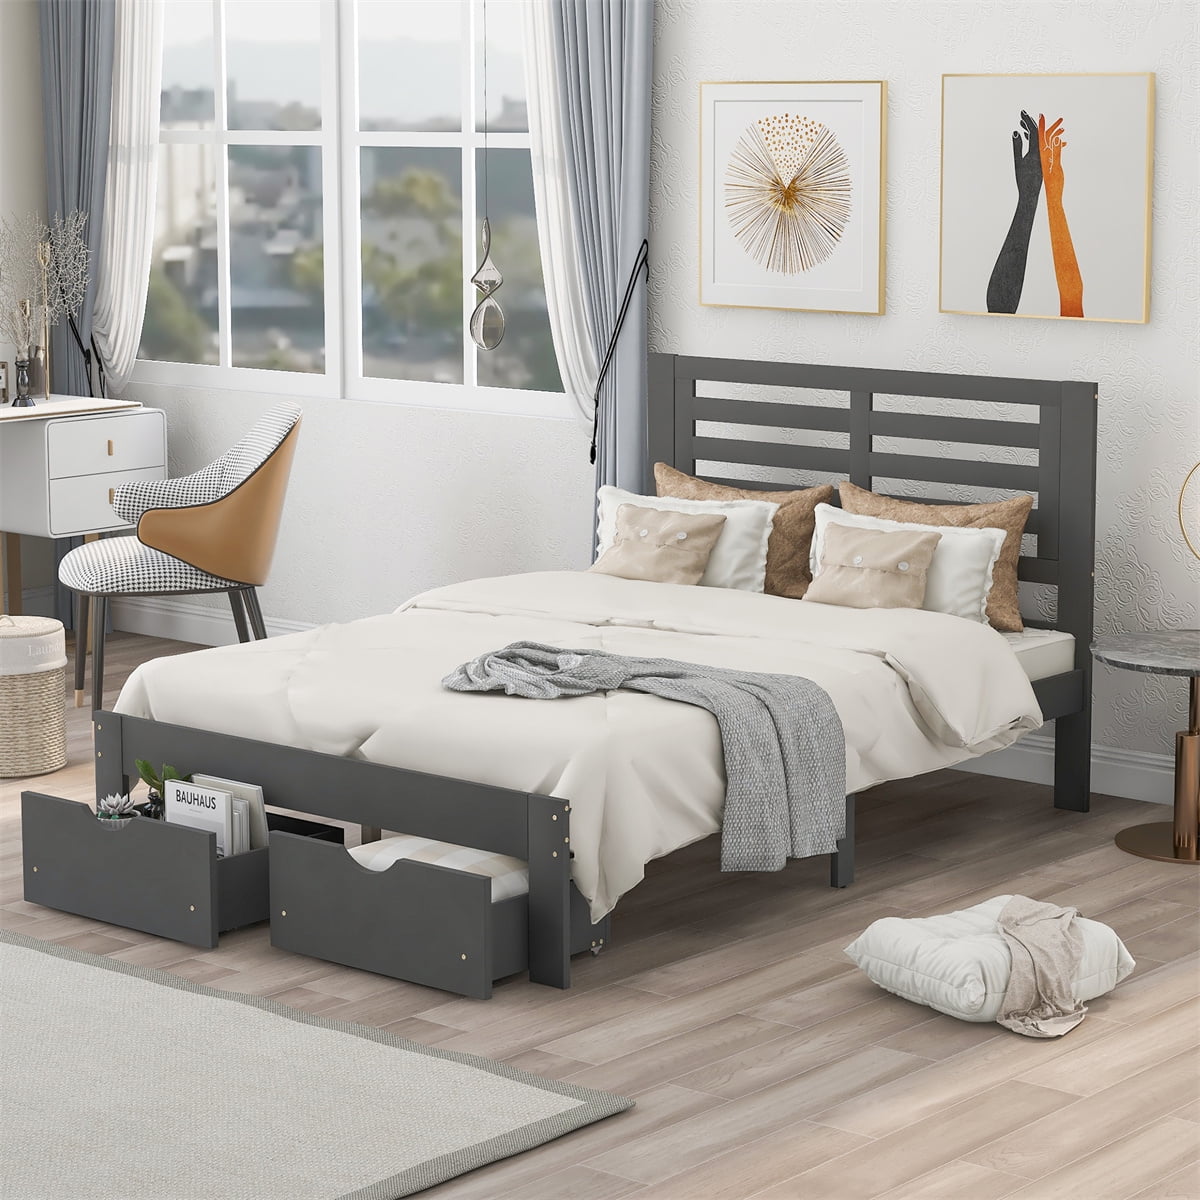 ASTARTH 54.1"Full-Size Platform Bed,Wood Platform Bed Frame with